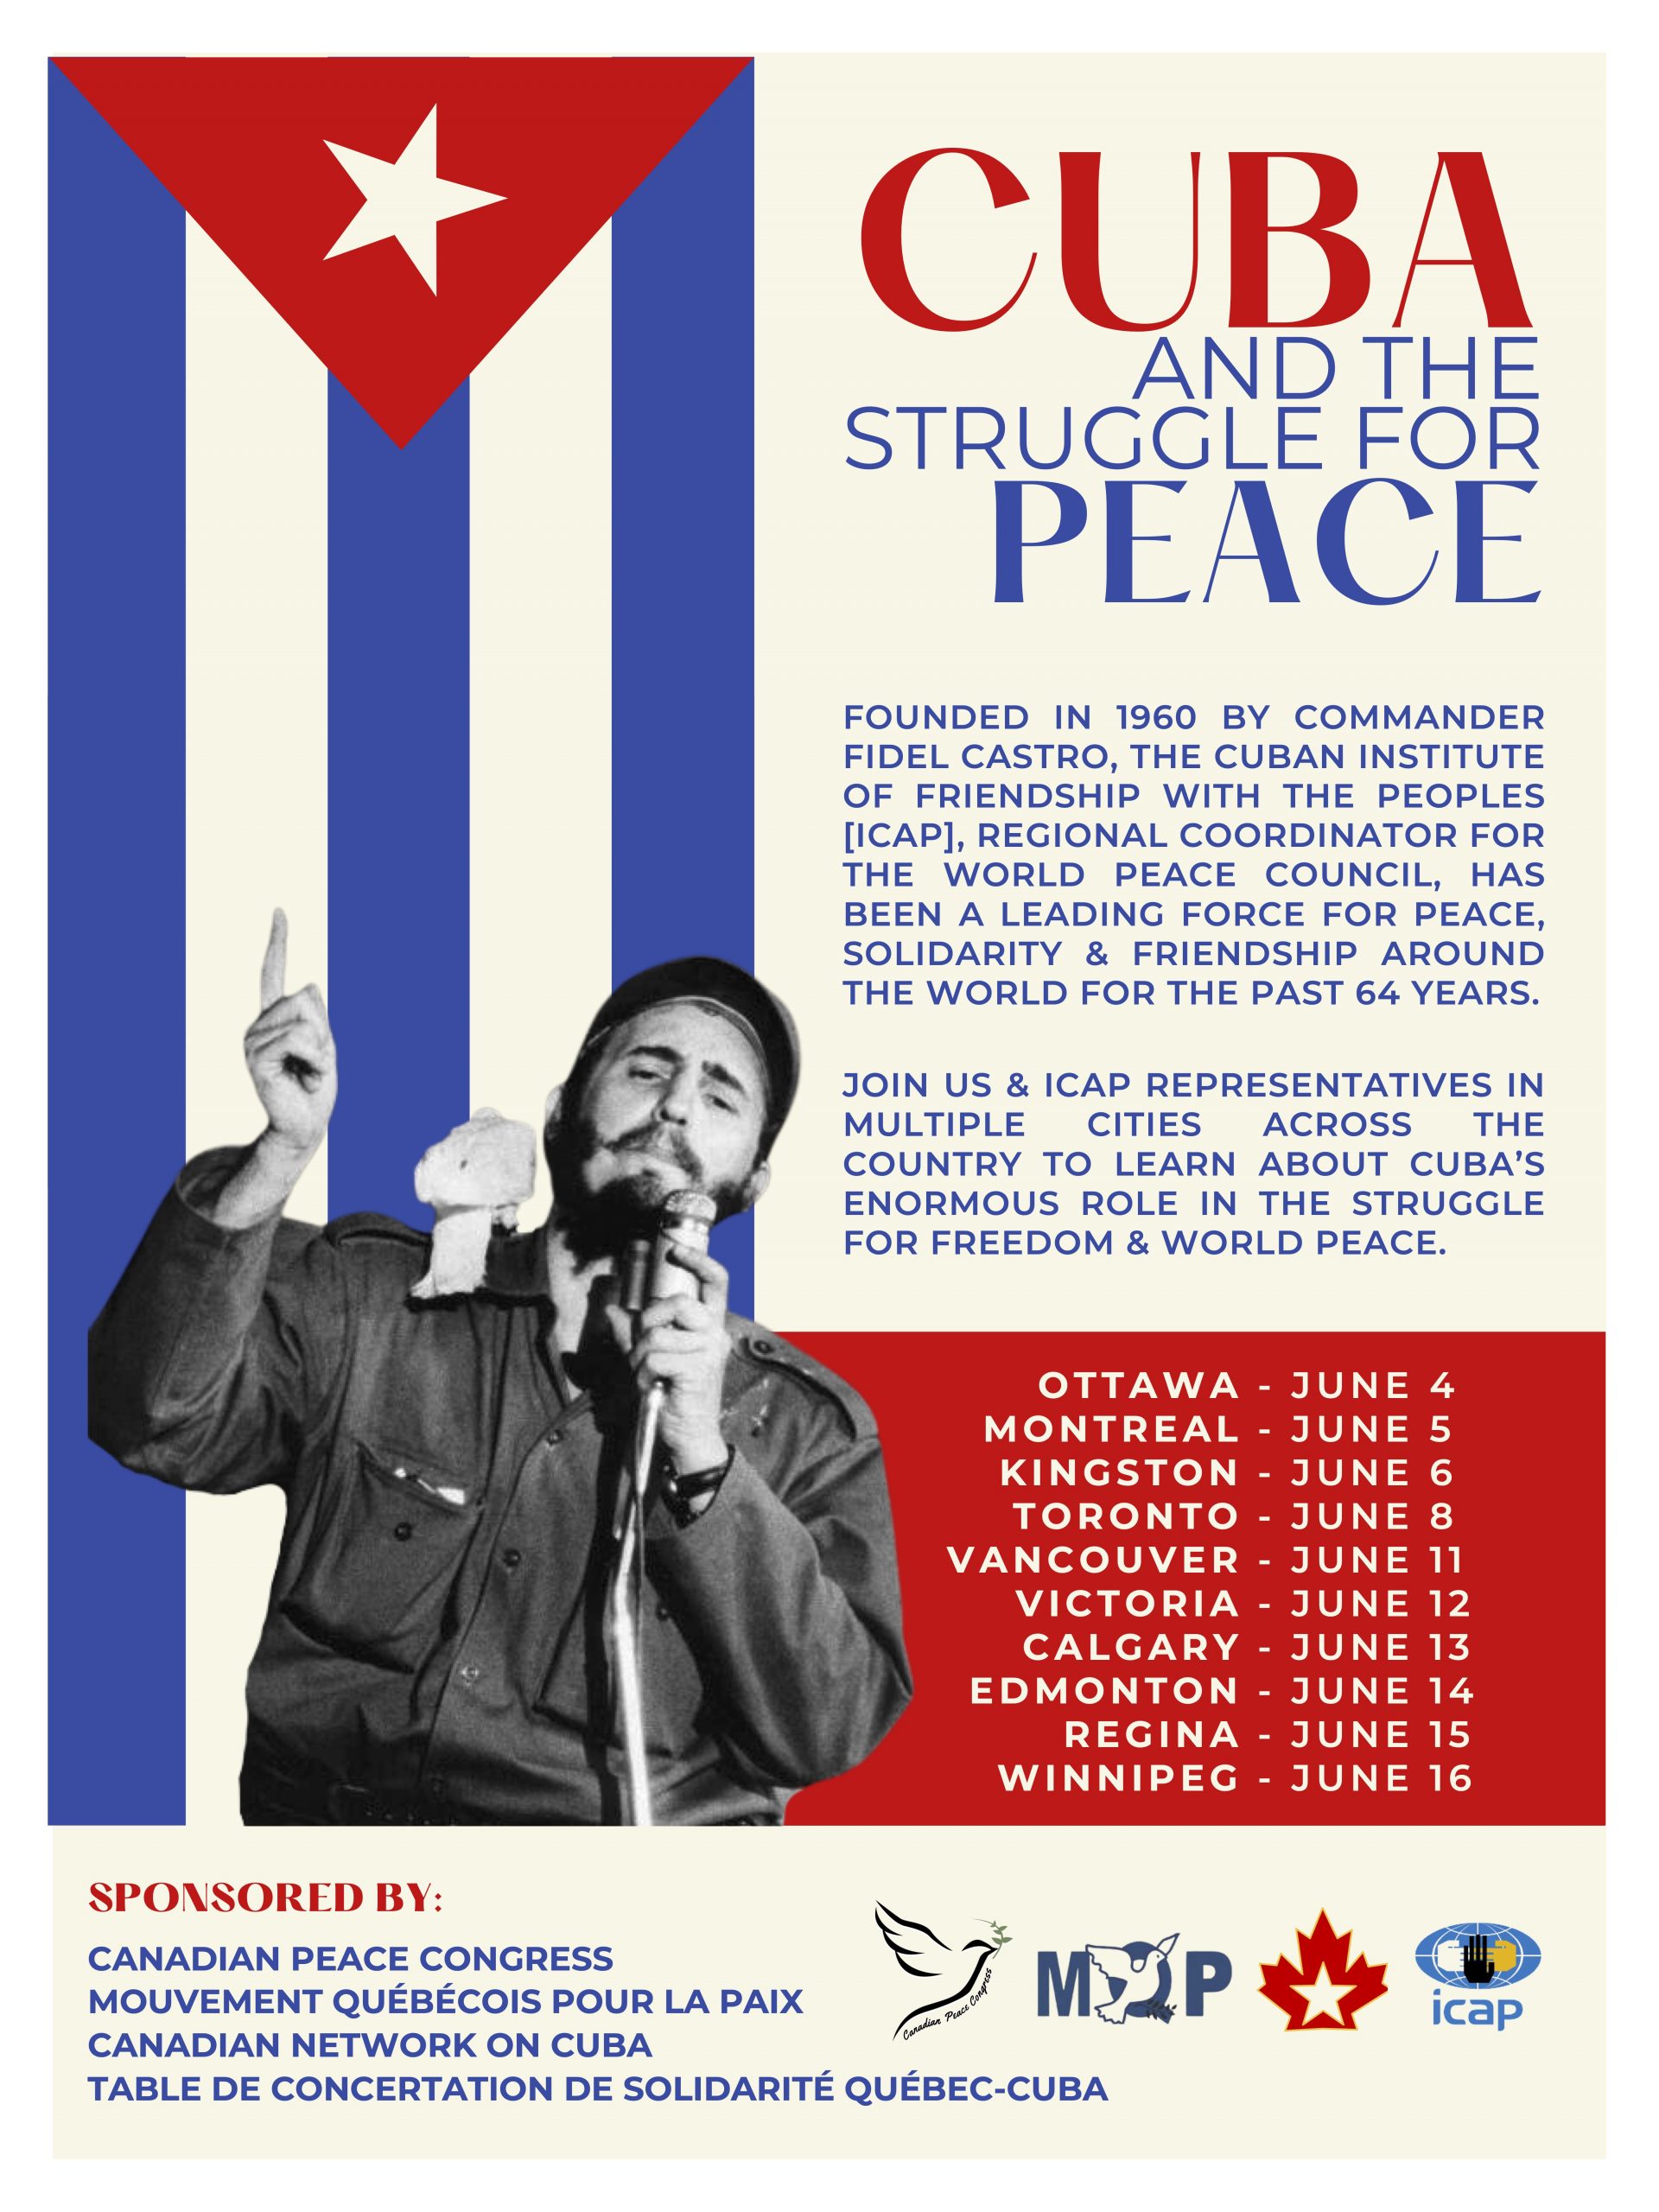 Cuba and the Struggle for Peace Tour